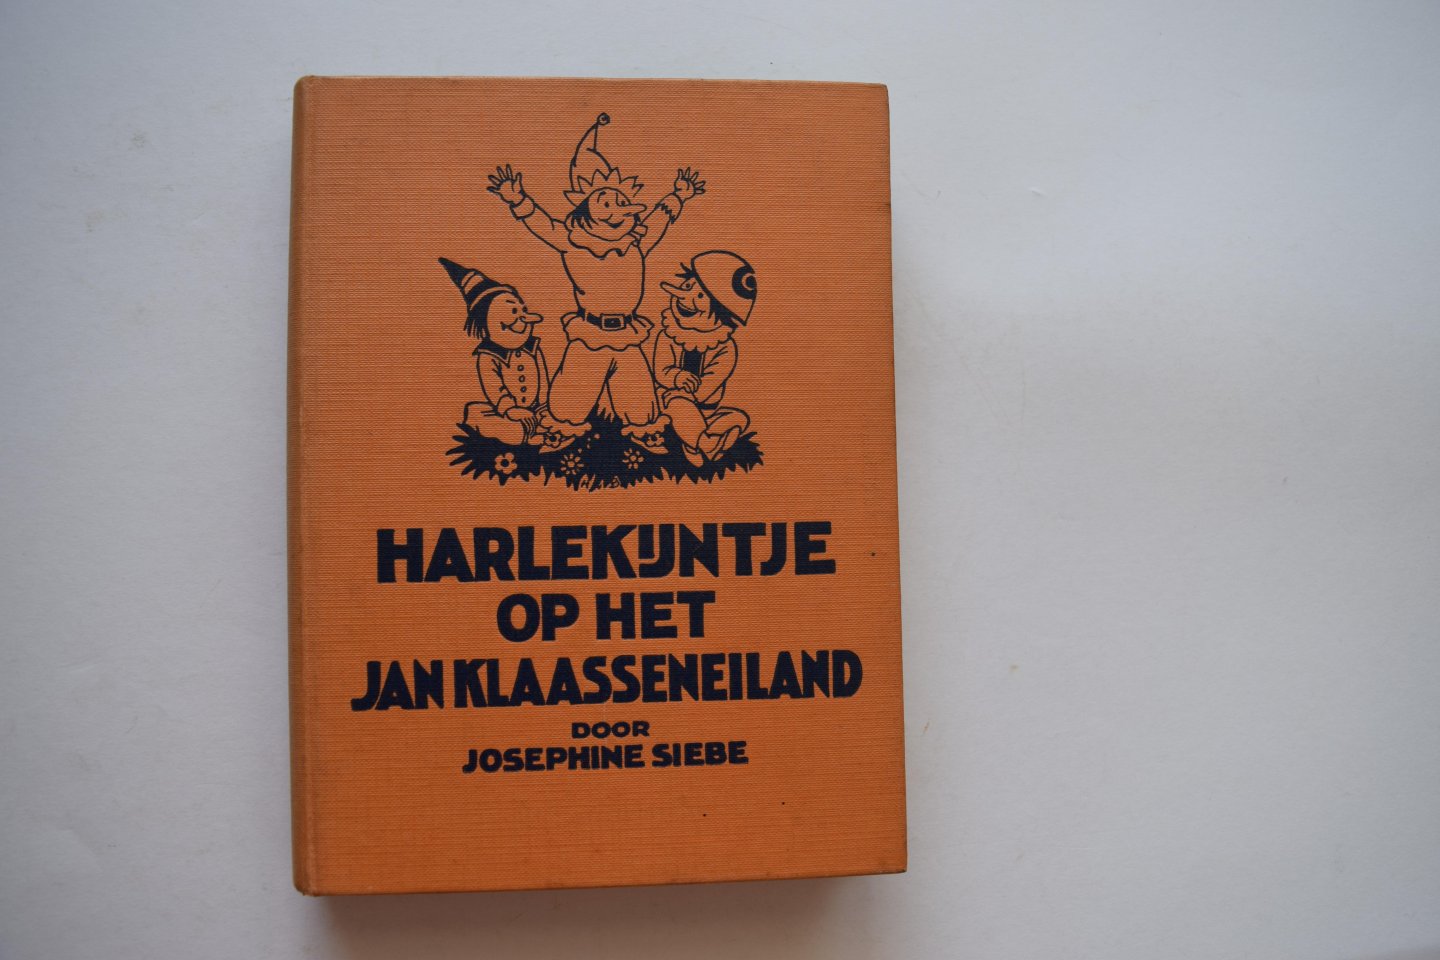 Siebe, Josephine - Harlekijntje op het Jan Klaassen eiland